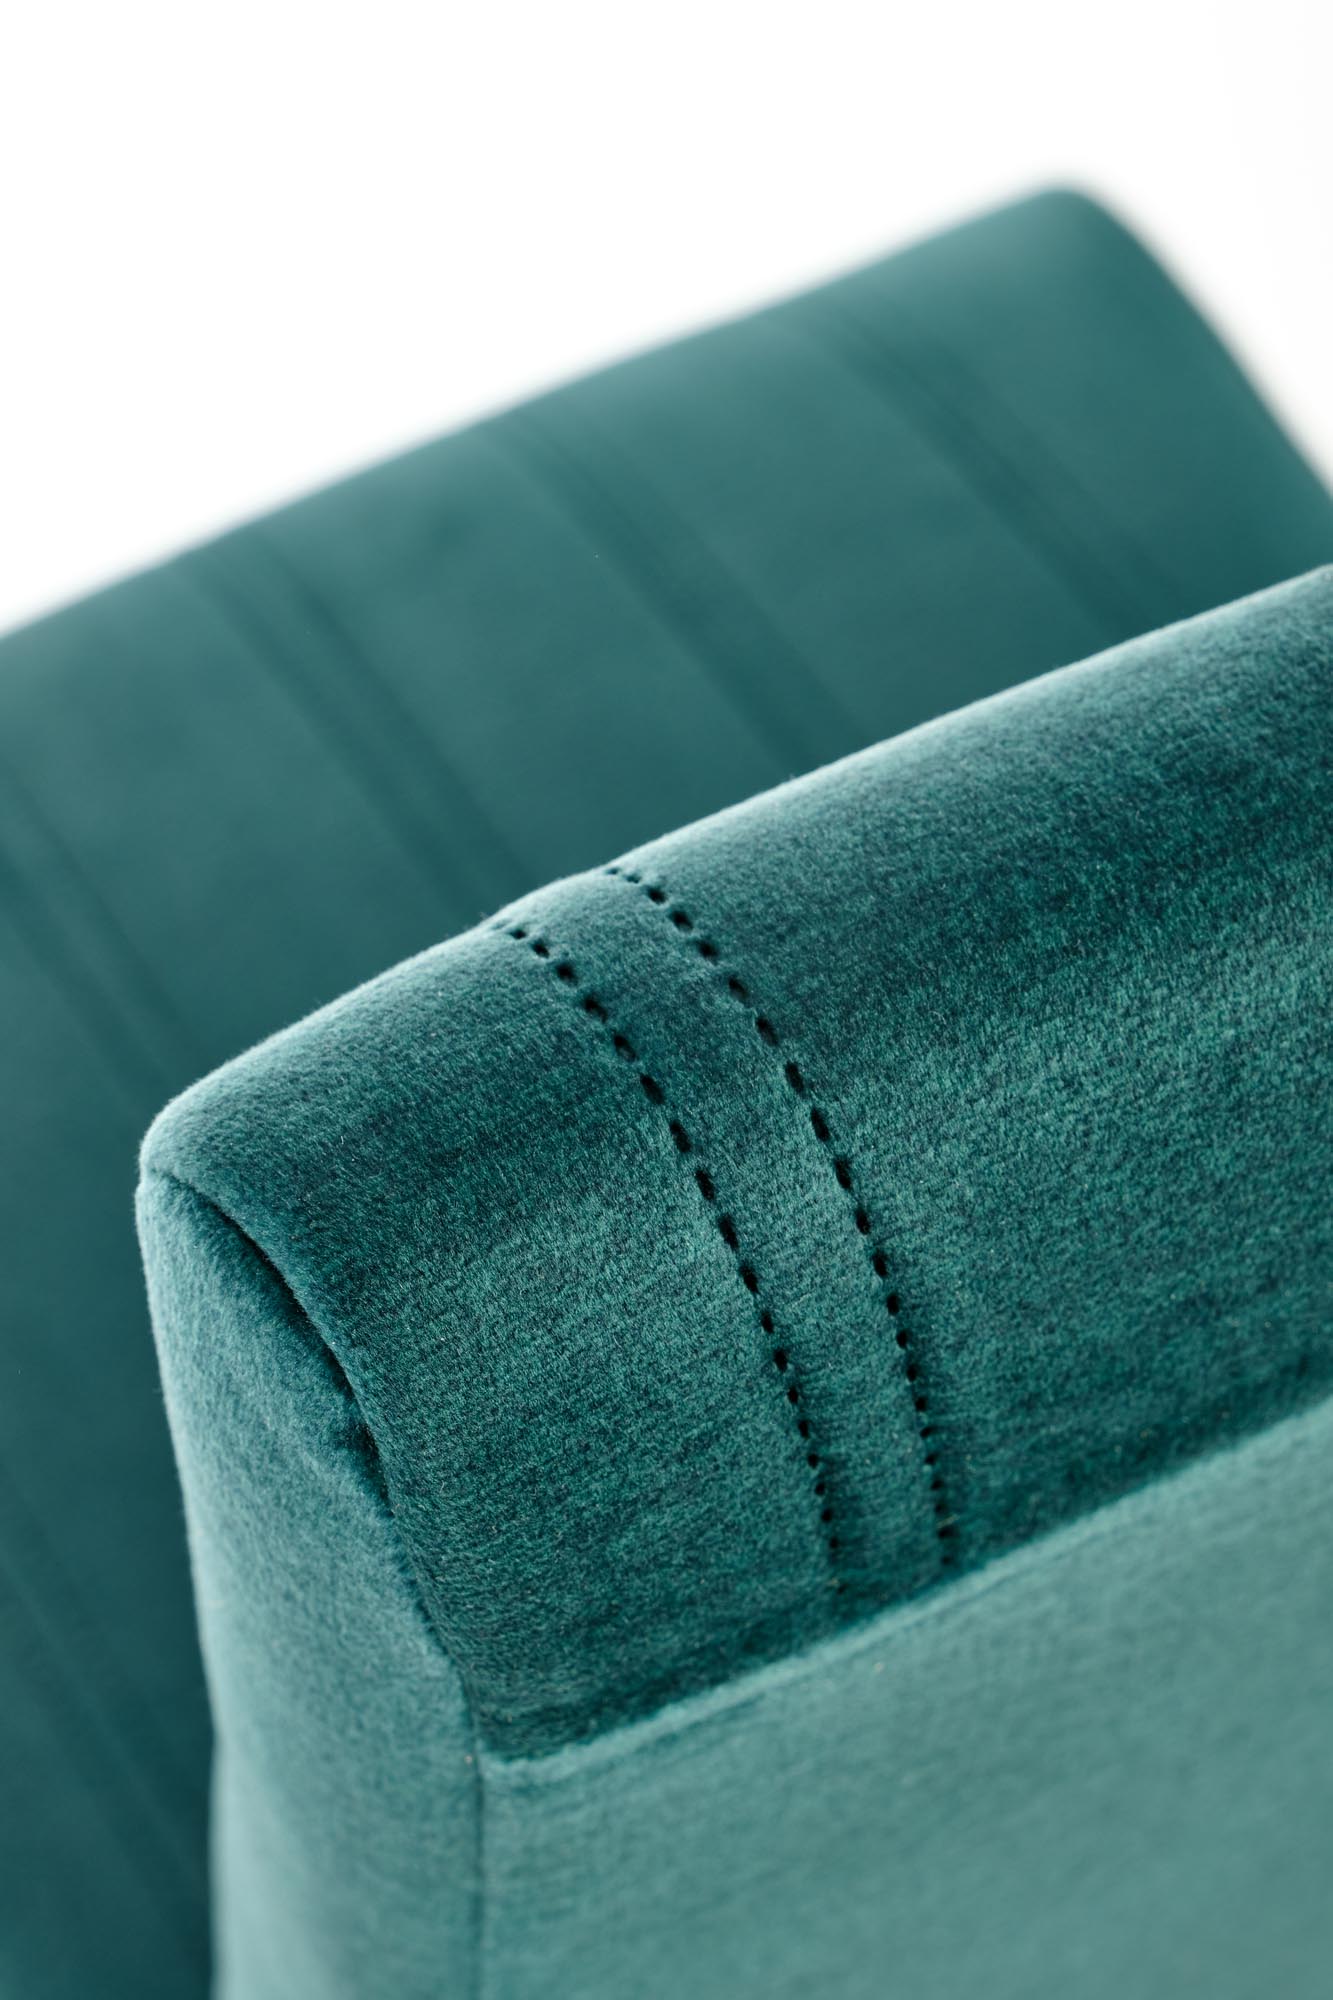 DIEGO 3 krzesło dąb miodowy / tap. velvet pikowany Pasy - MONOLITH 37 (ciemny zielony) diego 3 krzesło dąb miodowy / tap. velvet pikowany pasy - monolith 37 (ciemny zielony)